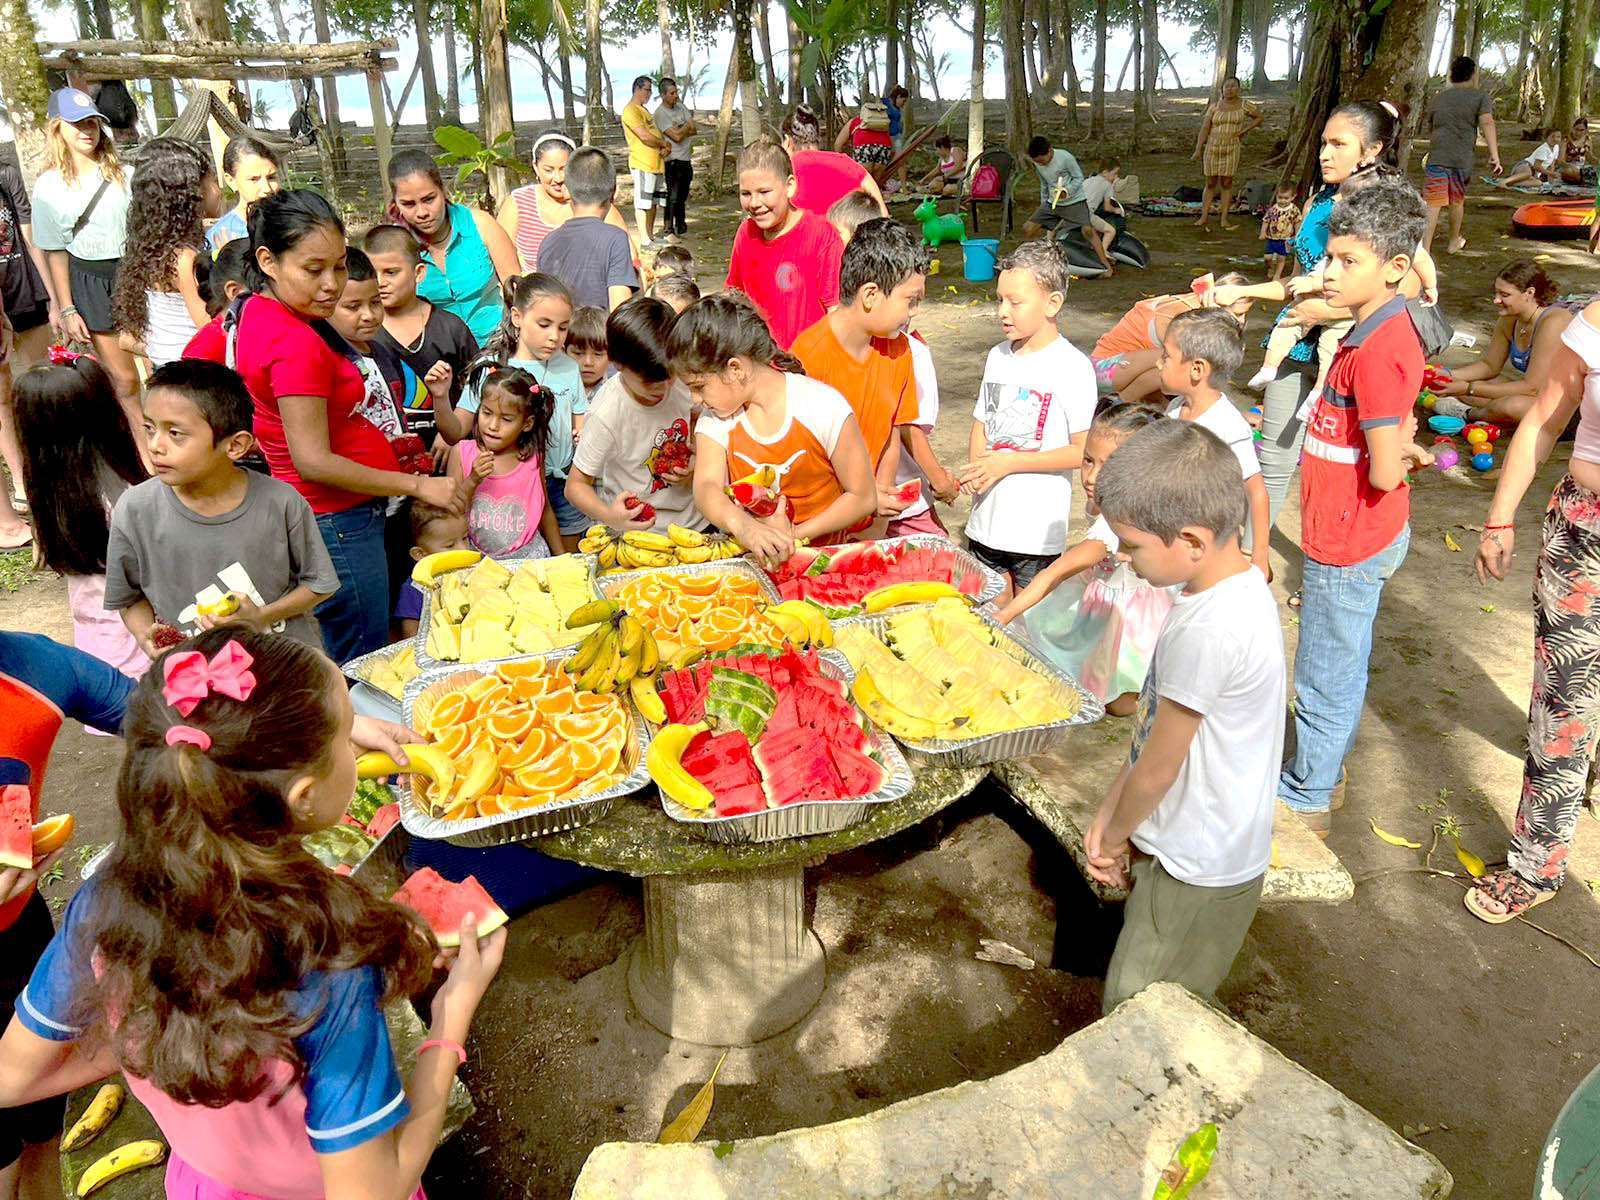 Kinder der Costa Ballena - Kräfte sammeln mit Früchten